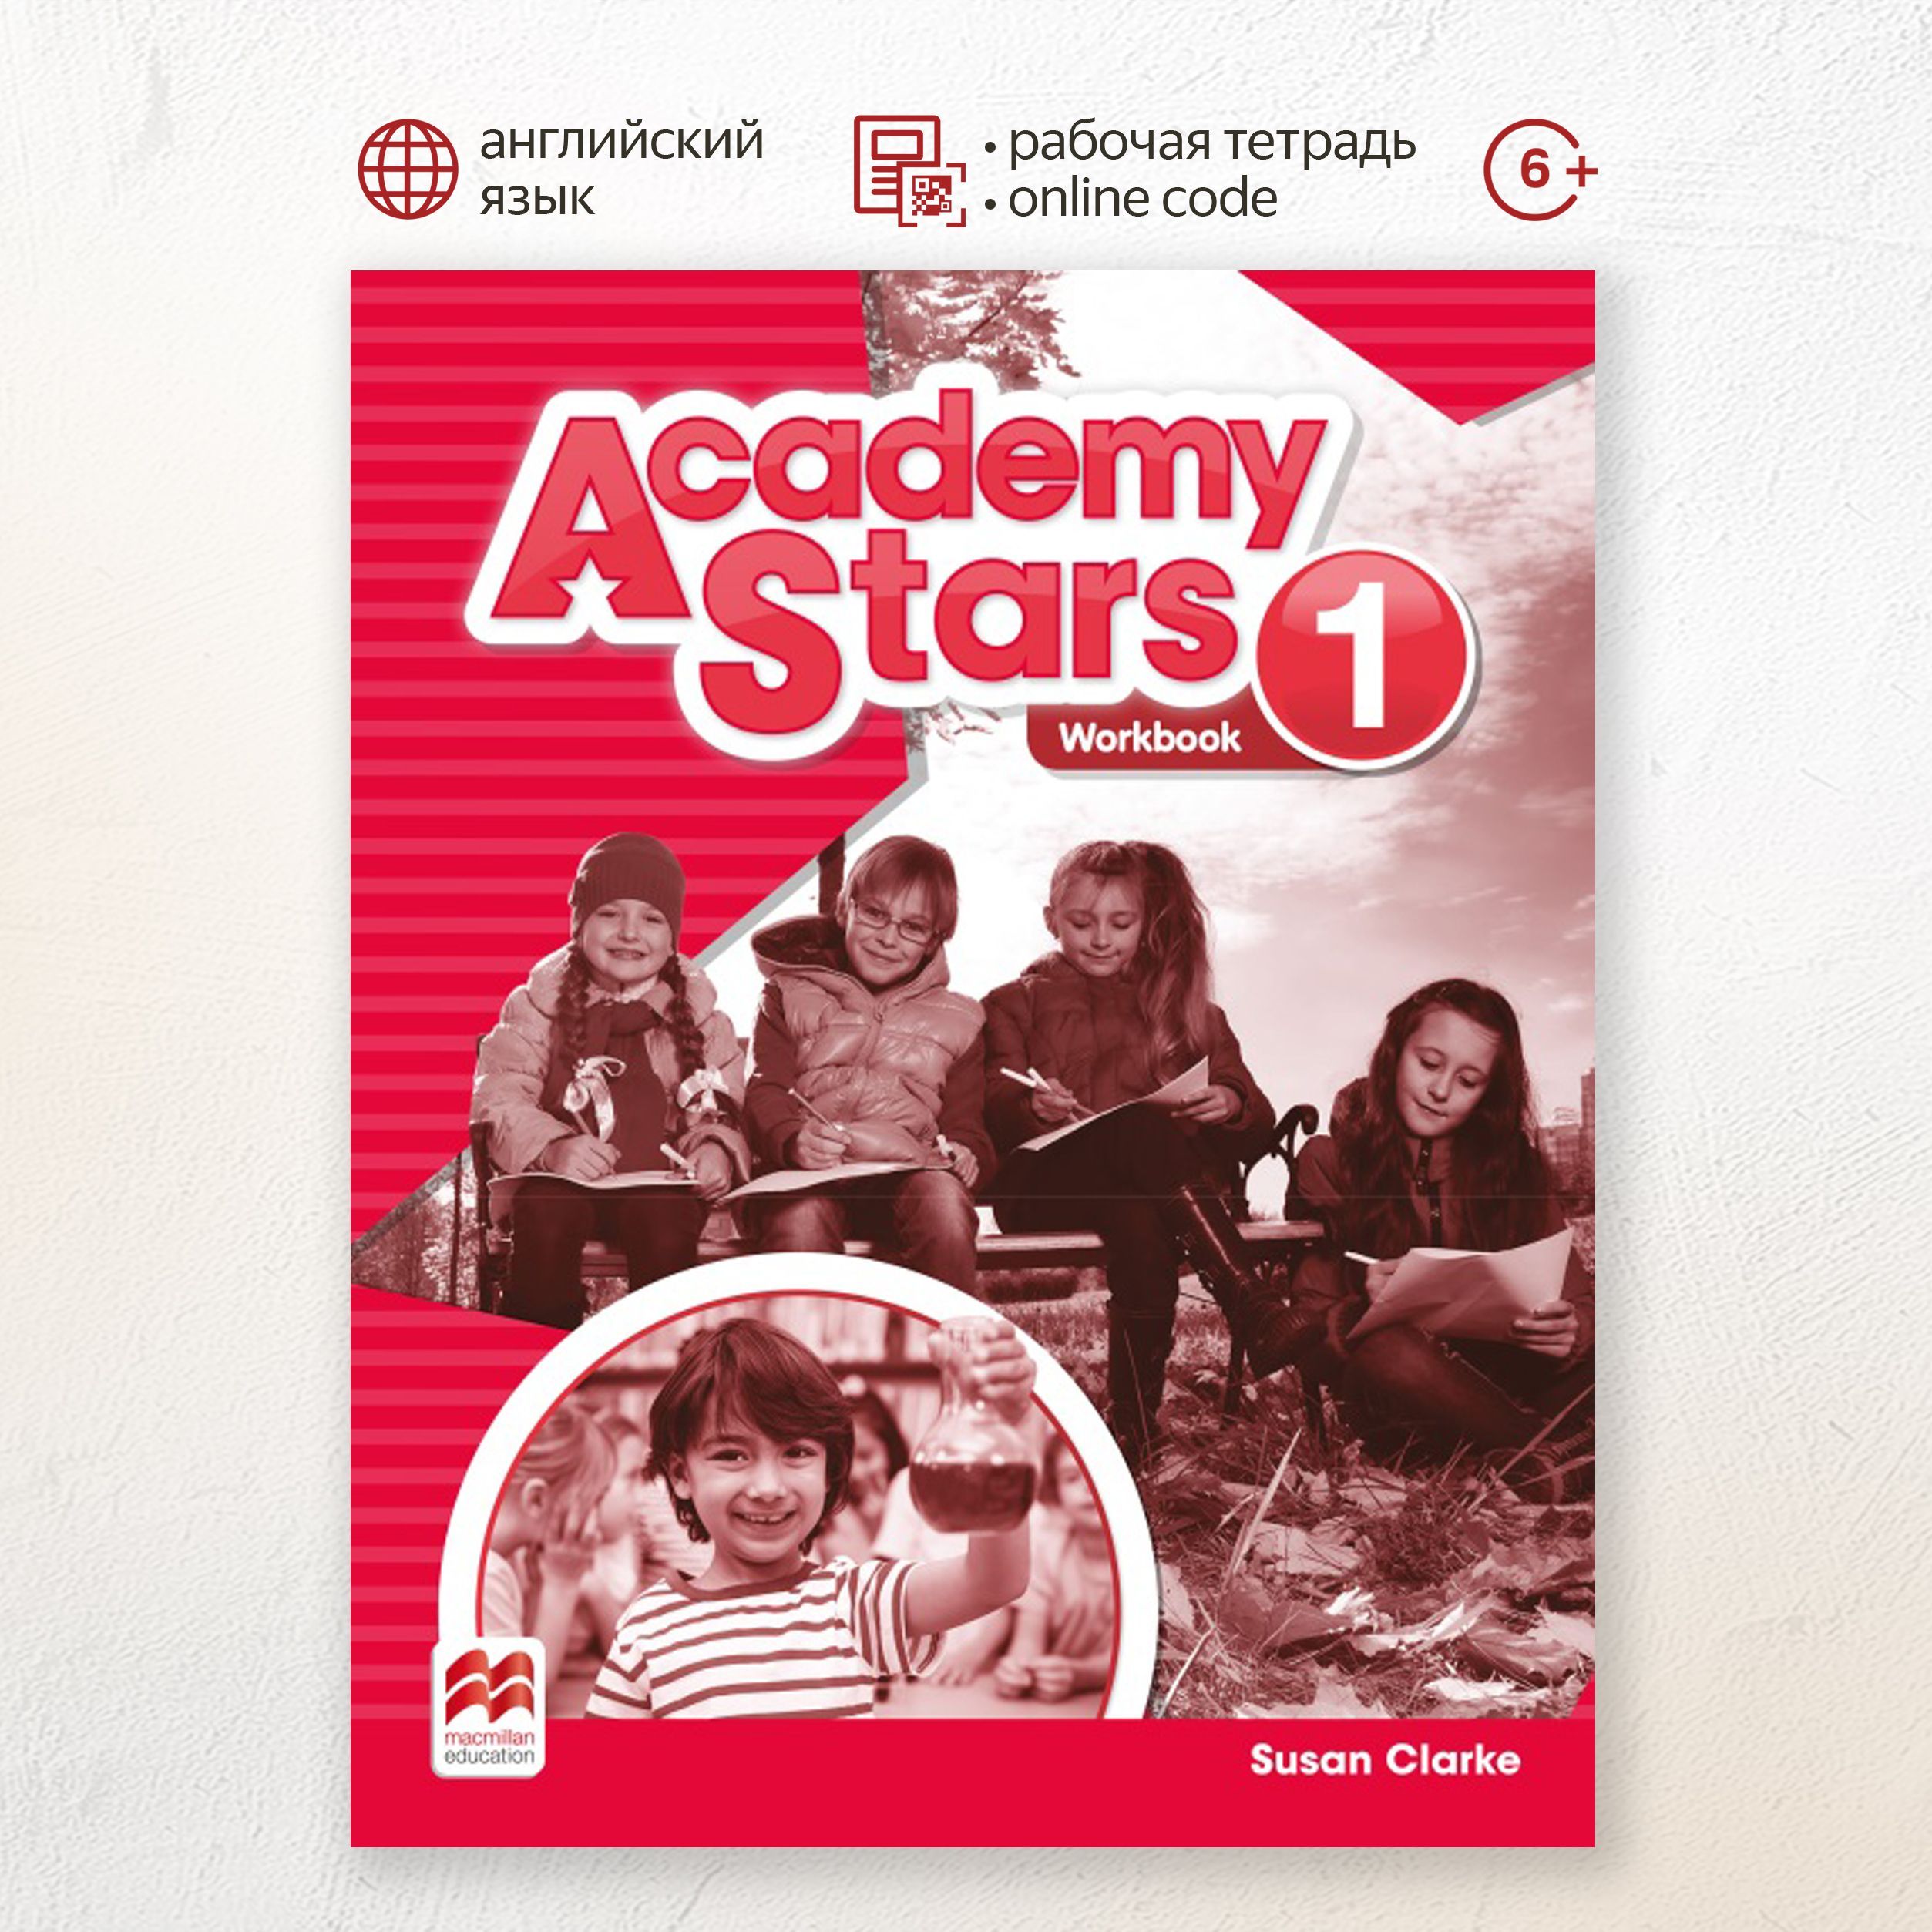 Английский 10 класс workbook starlight. Academy Stars Starter Workbook. Ключи к Academy Stars 1 Workbook. Academy Stars 1 Workbook стр57. Гдз по английскому 5 Academy Stars Workbook Susan Clarke рабочая тетрадь.